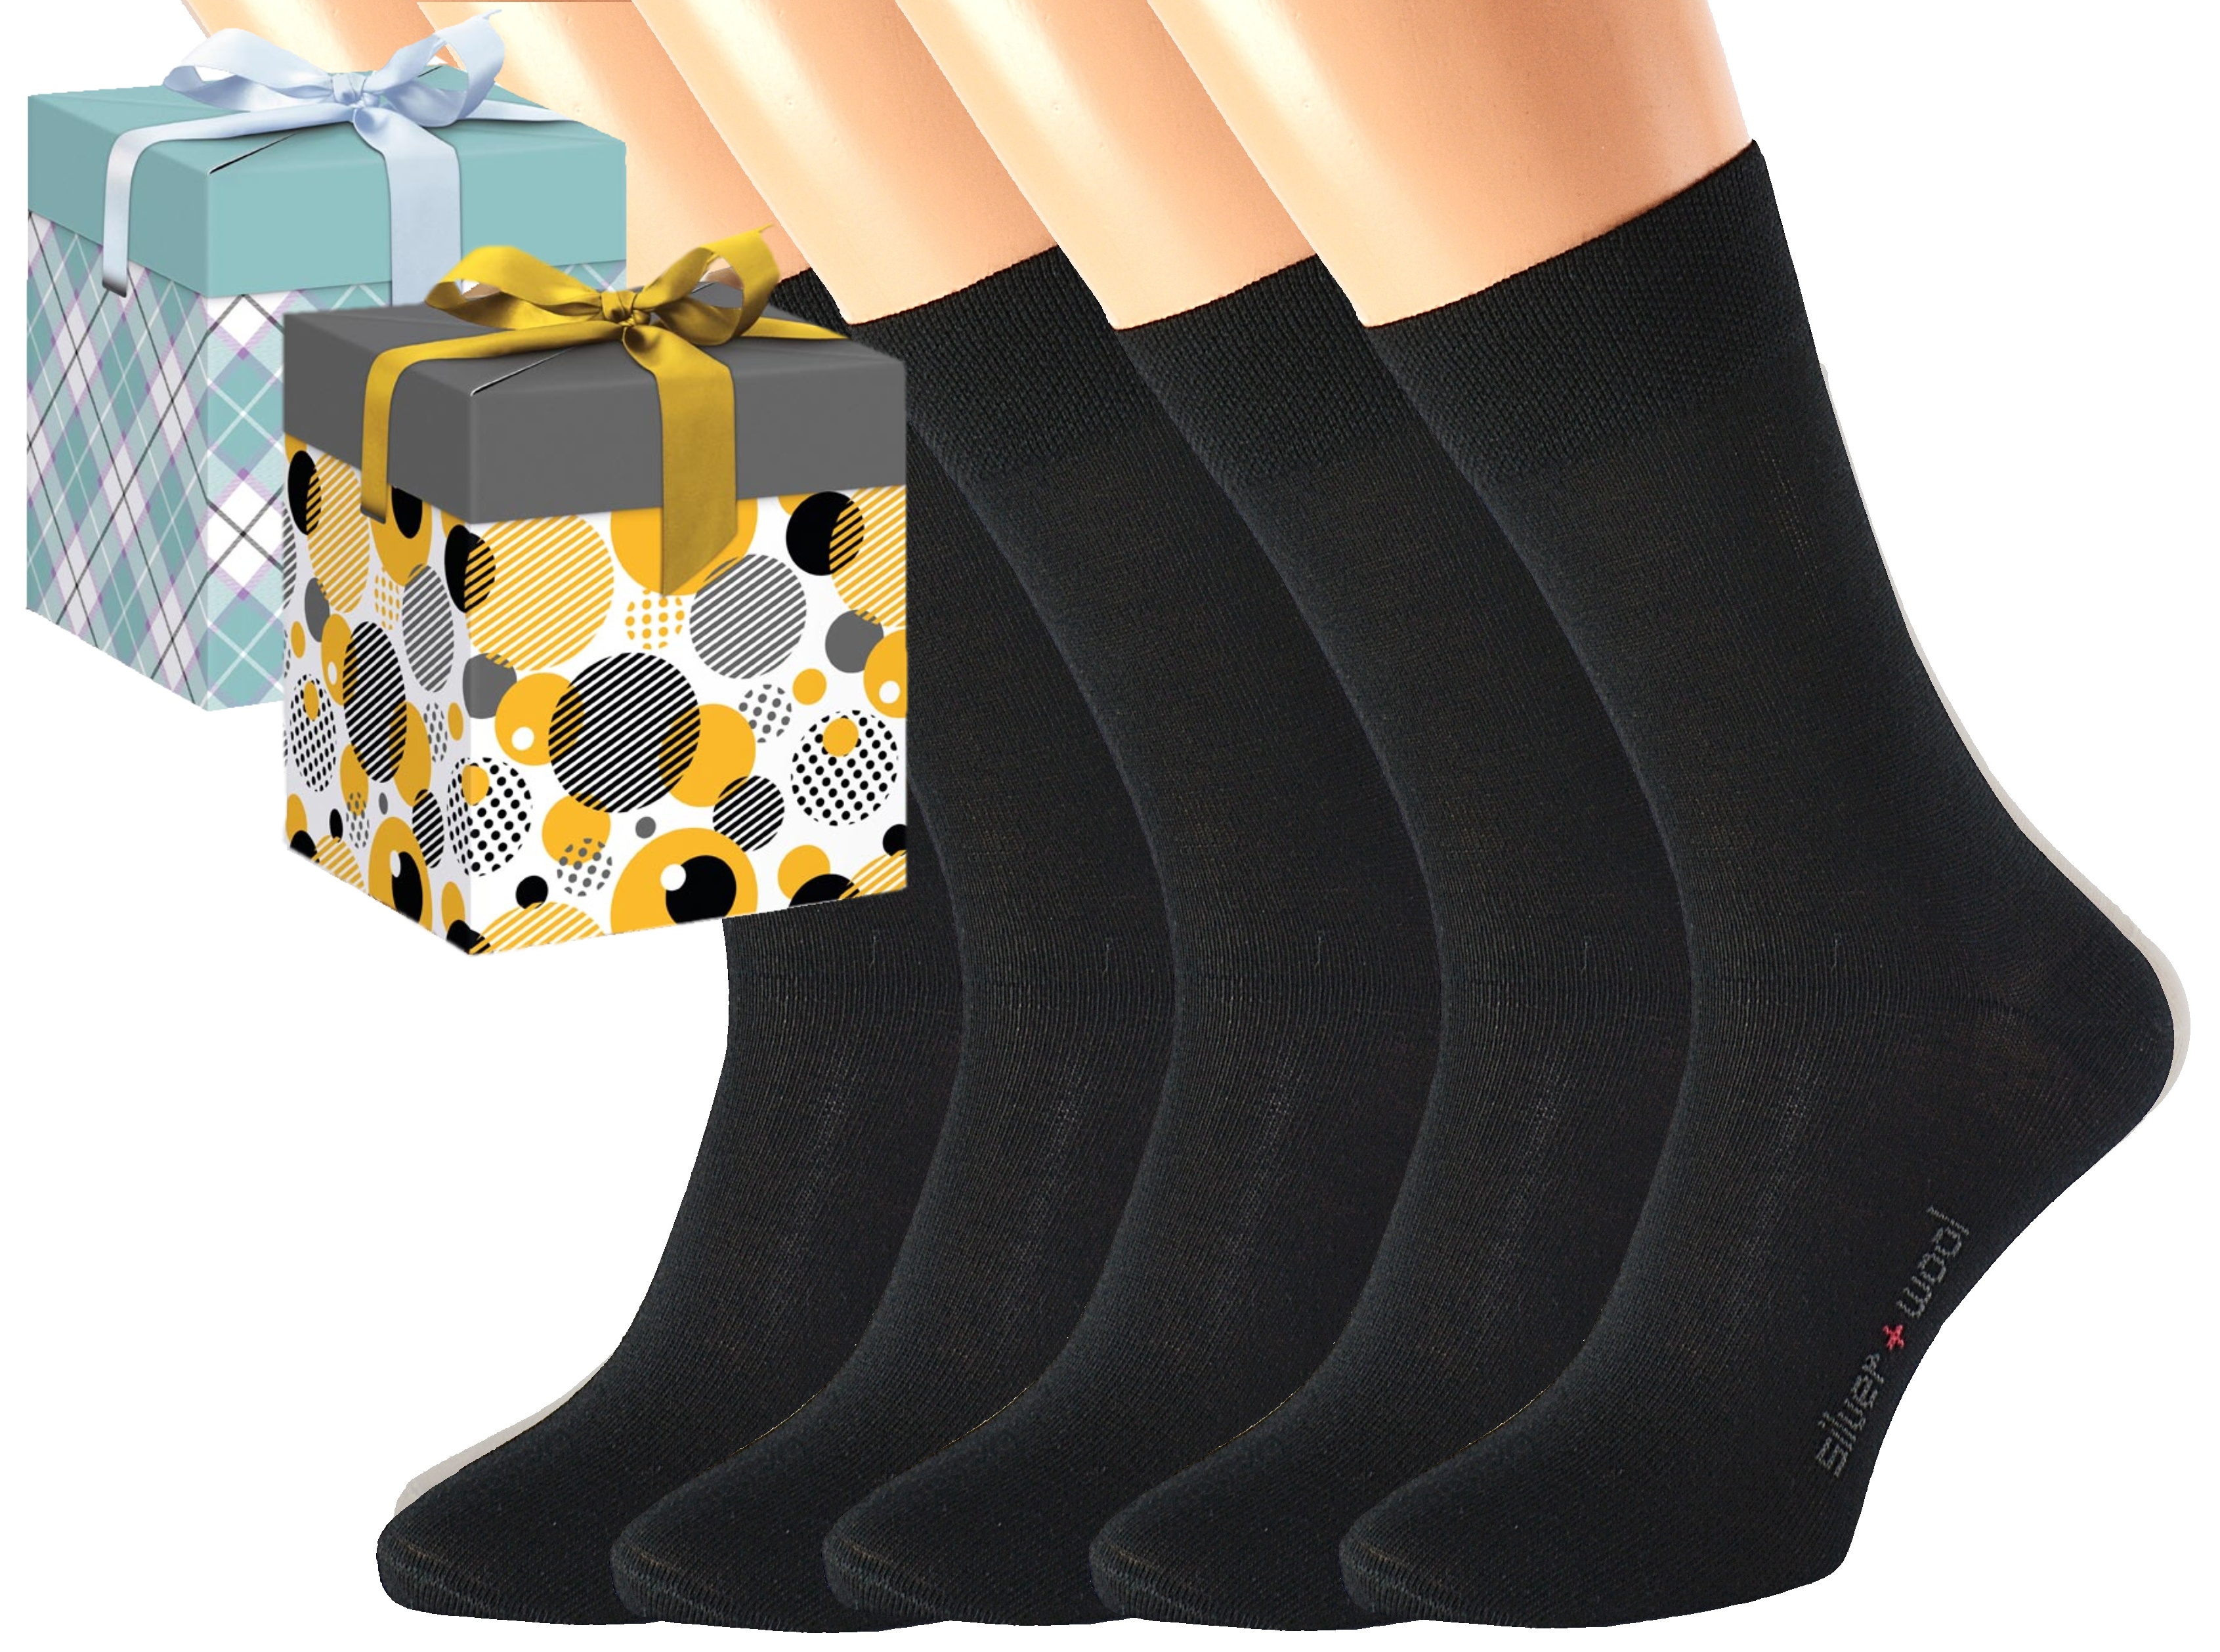 Dárkové balení 5 párů vlněných ponožek DAVID Barva: Černé, Velikost: EUR 39-41 (UK 6-7), Zvolte variantu dárkového balení: Mint kostkovaná